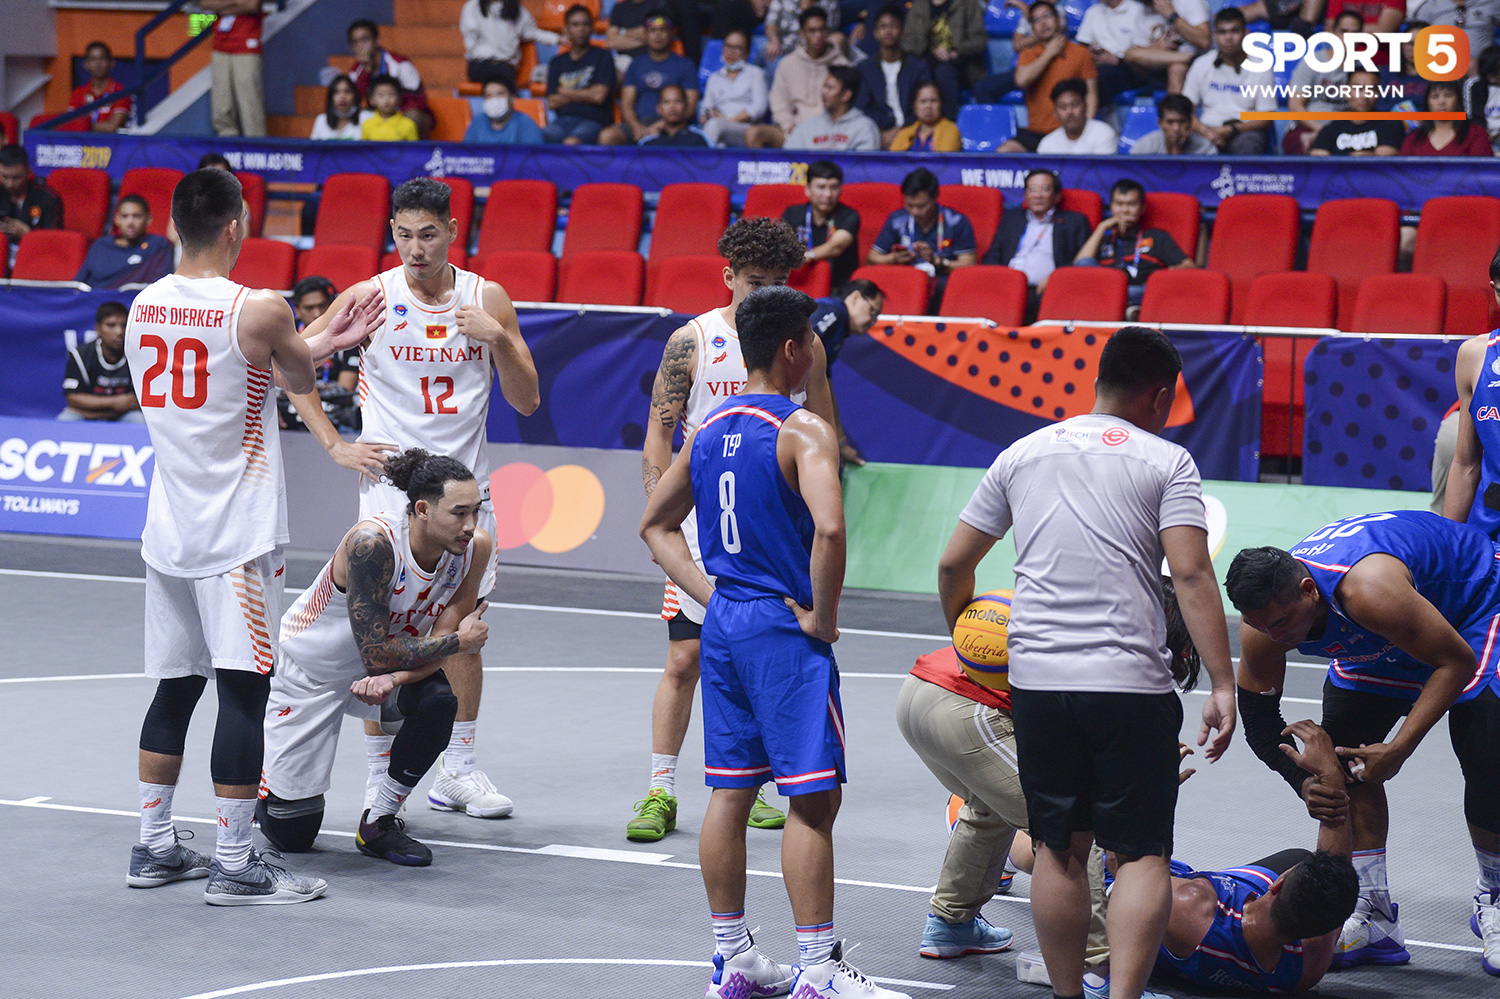 Tình huống dùng cáng cứu thương đầu tiên trong bộ môn bóng rổ tại SEA Games 30: Quá cố gắng ngăn cản Việt Nam giành chiến thắng, cầu thủ Campuchia phải rời sân trong đau đớn - Ảnh 4.